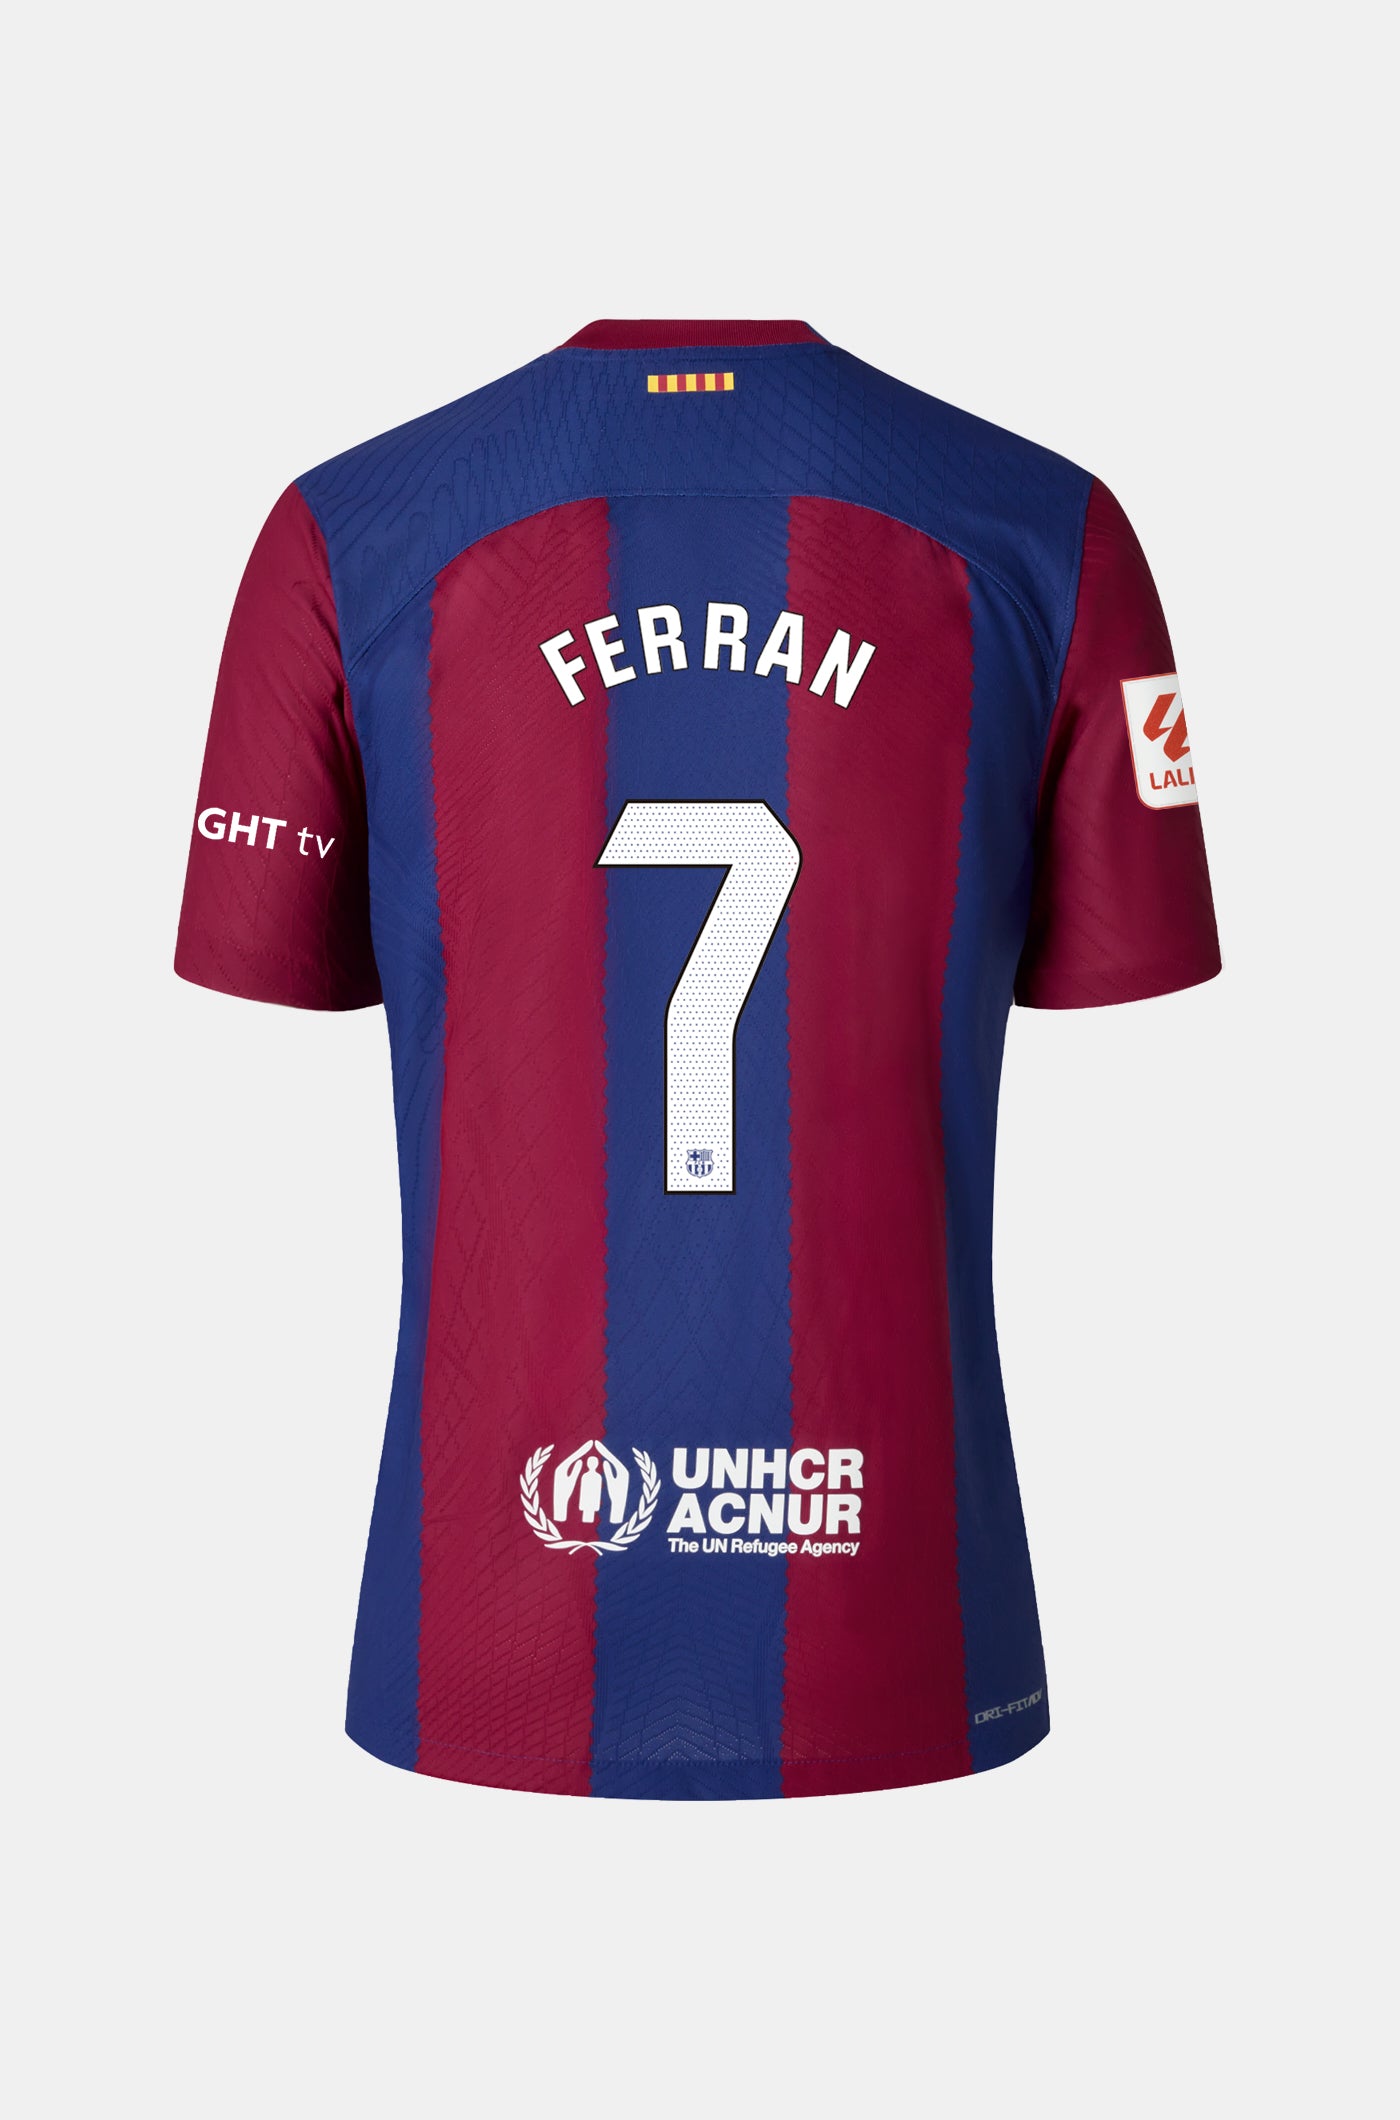 LFP Camiseta primera equipación FC Barcelona 23/24 - Mujer - FERRAN